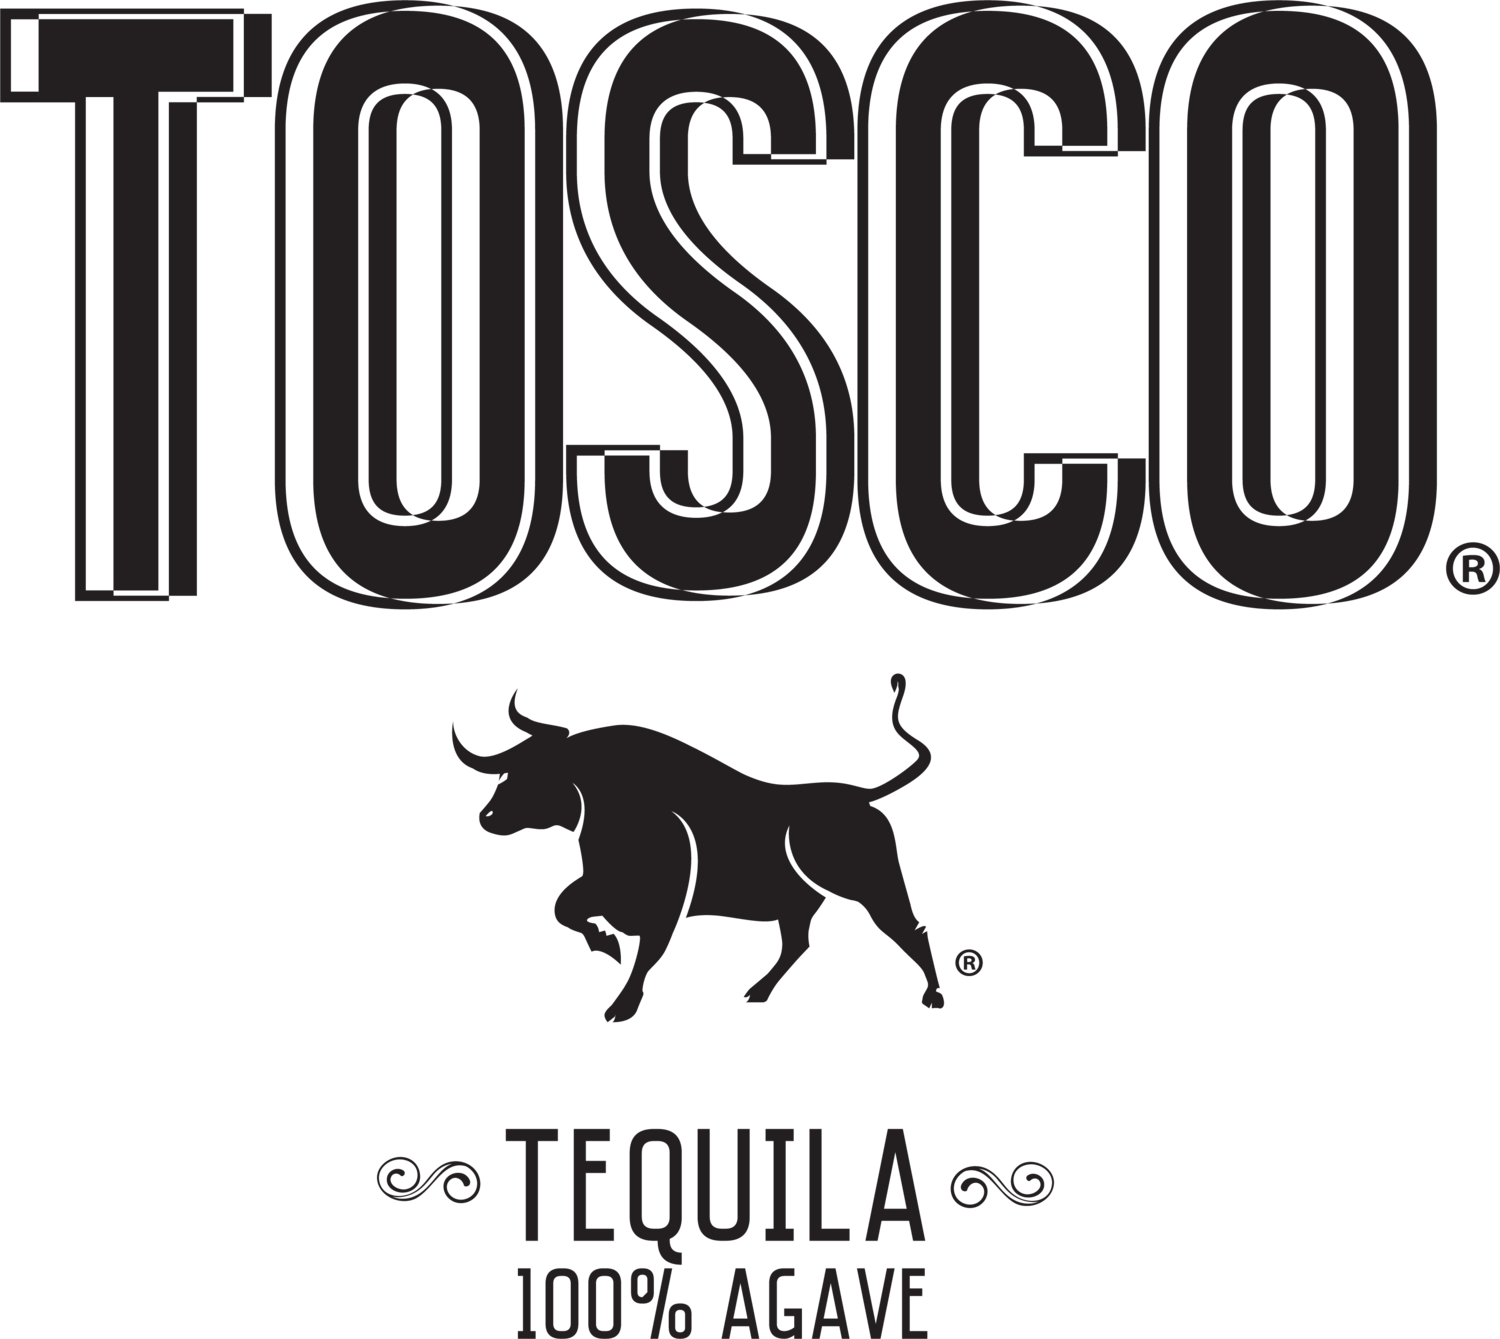 Tosco Tequila 